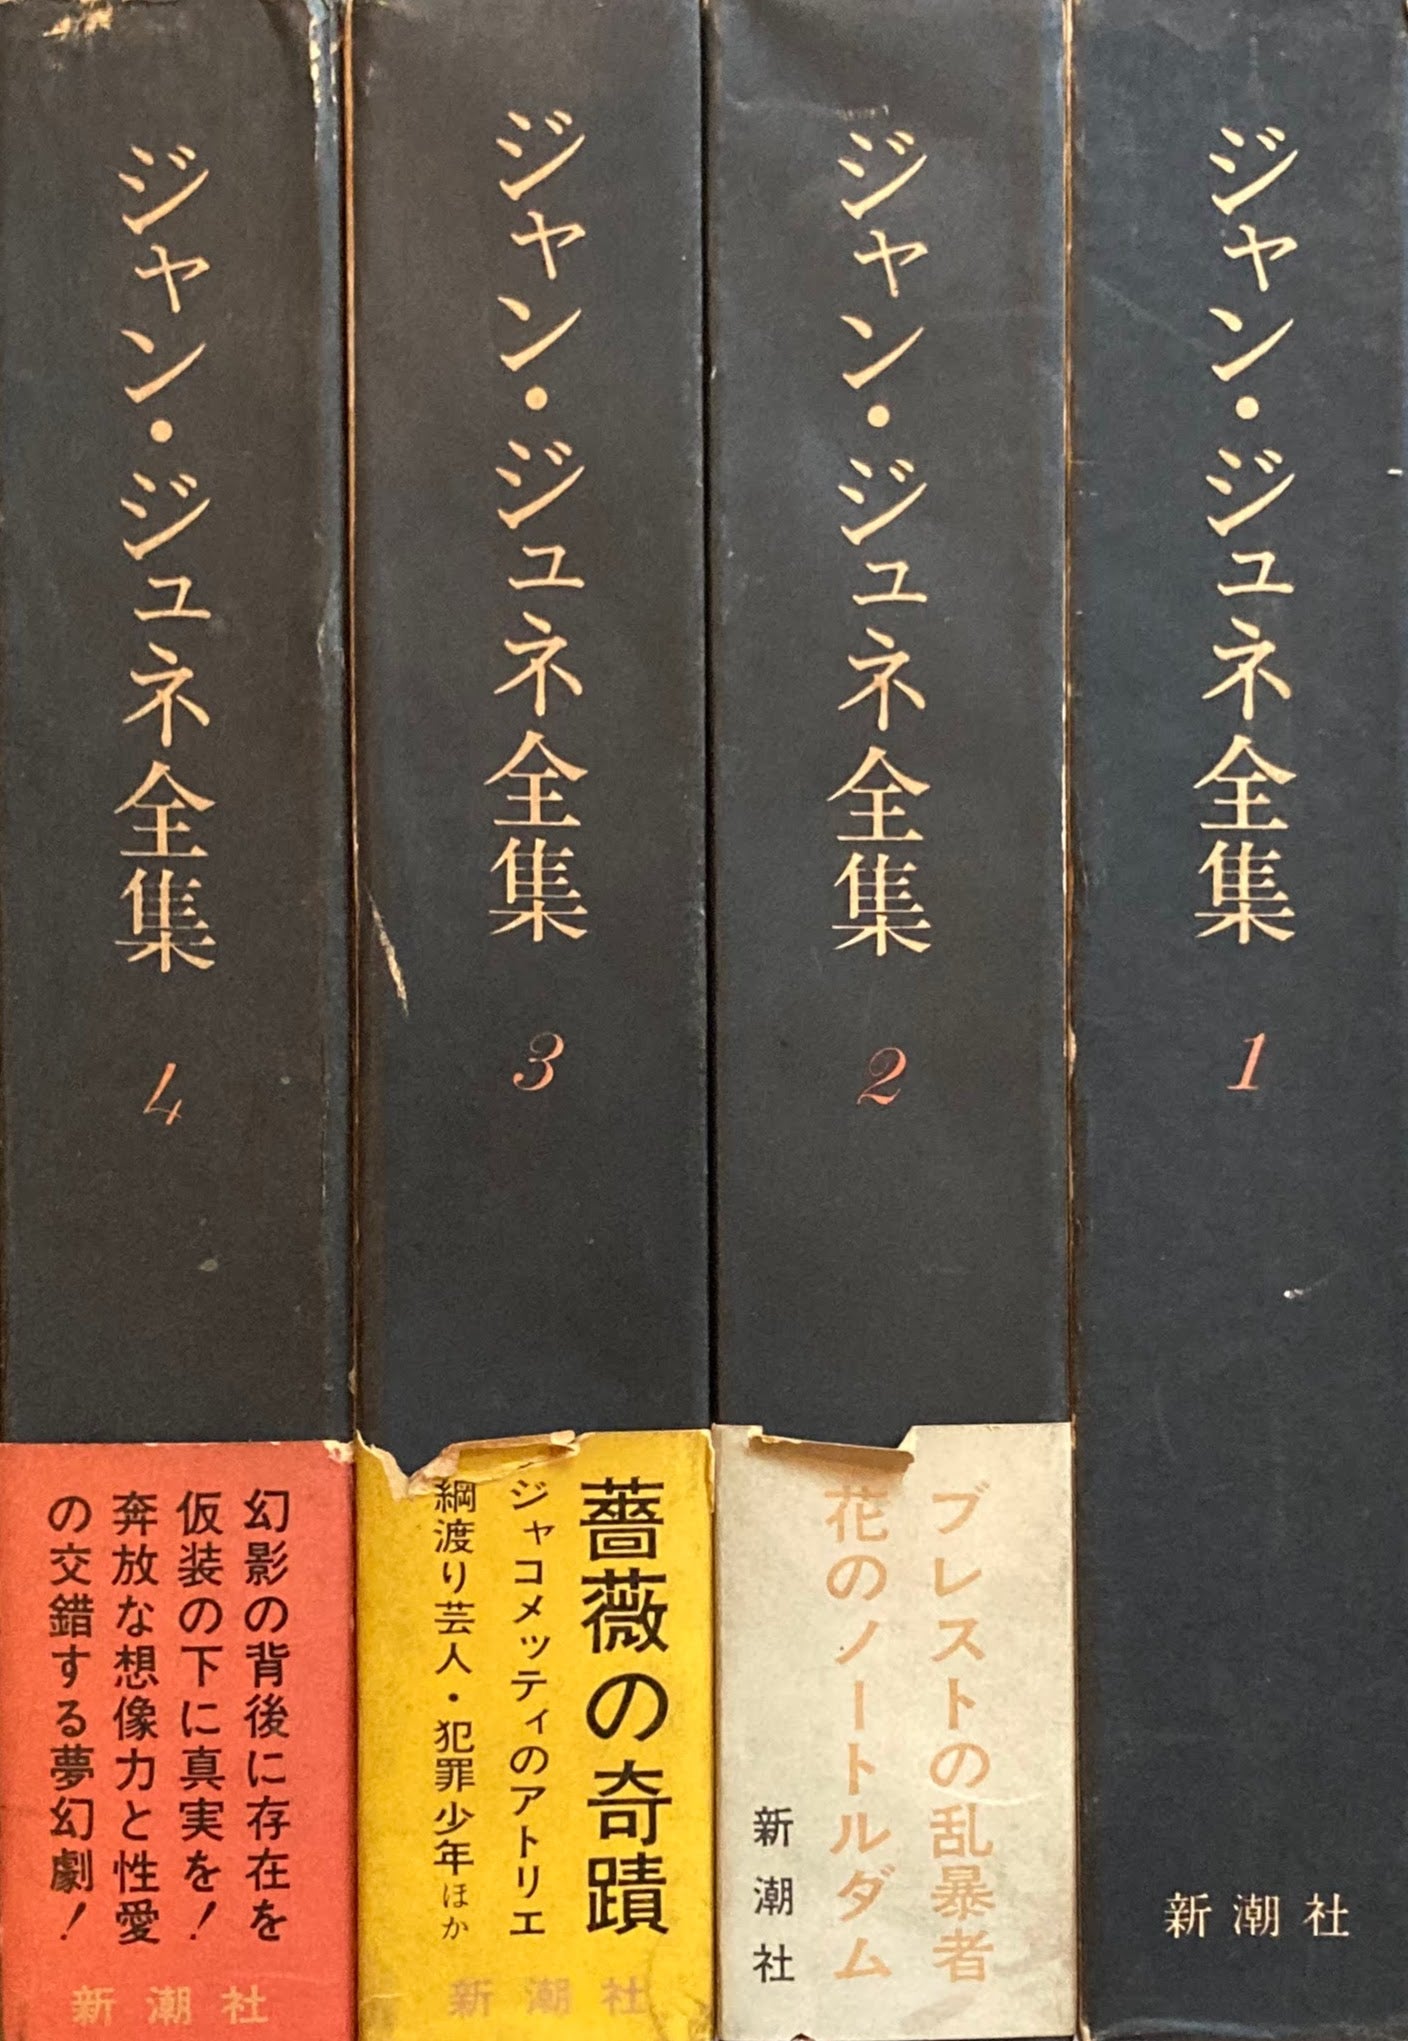 ジャン・ジュネ全集 全4巻 – smokebooks shop